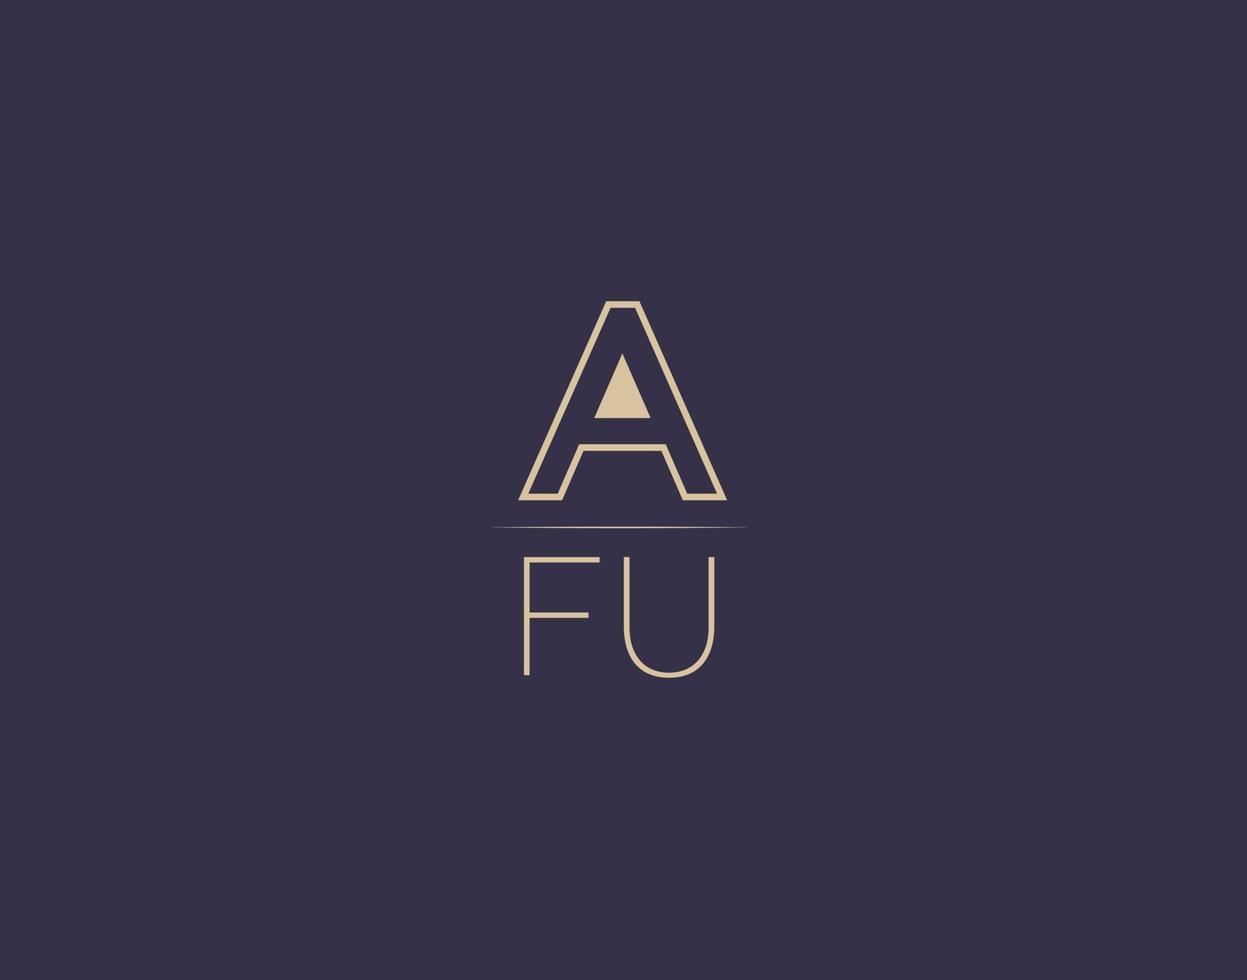 AFU letter logo design modern minimalist vector images